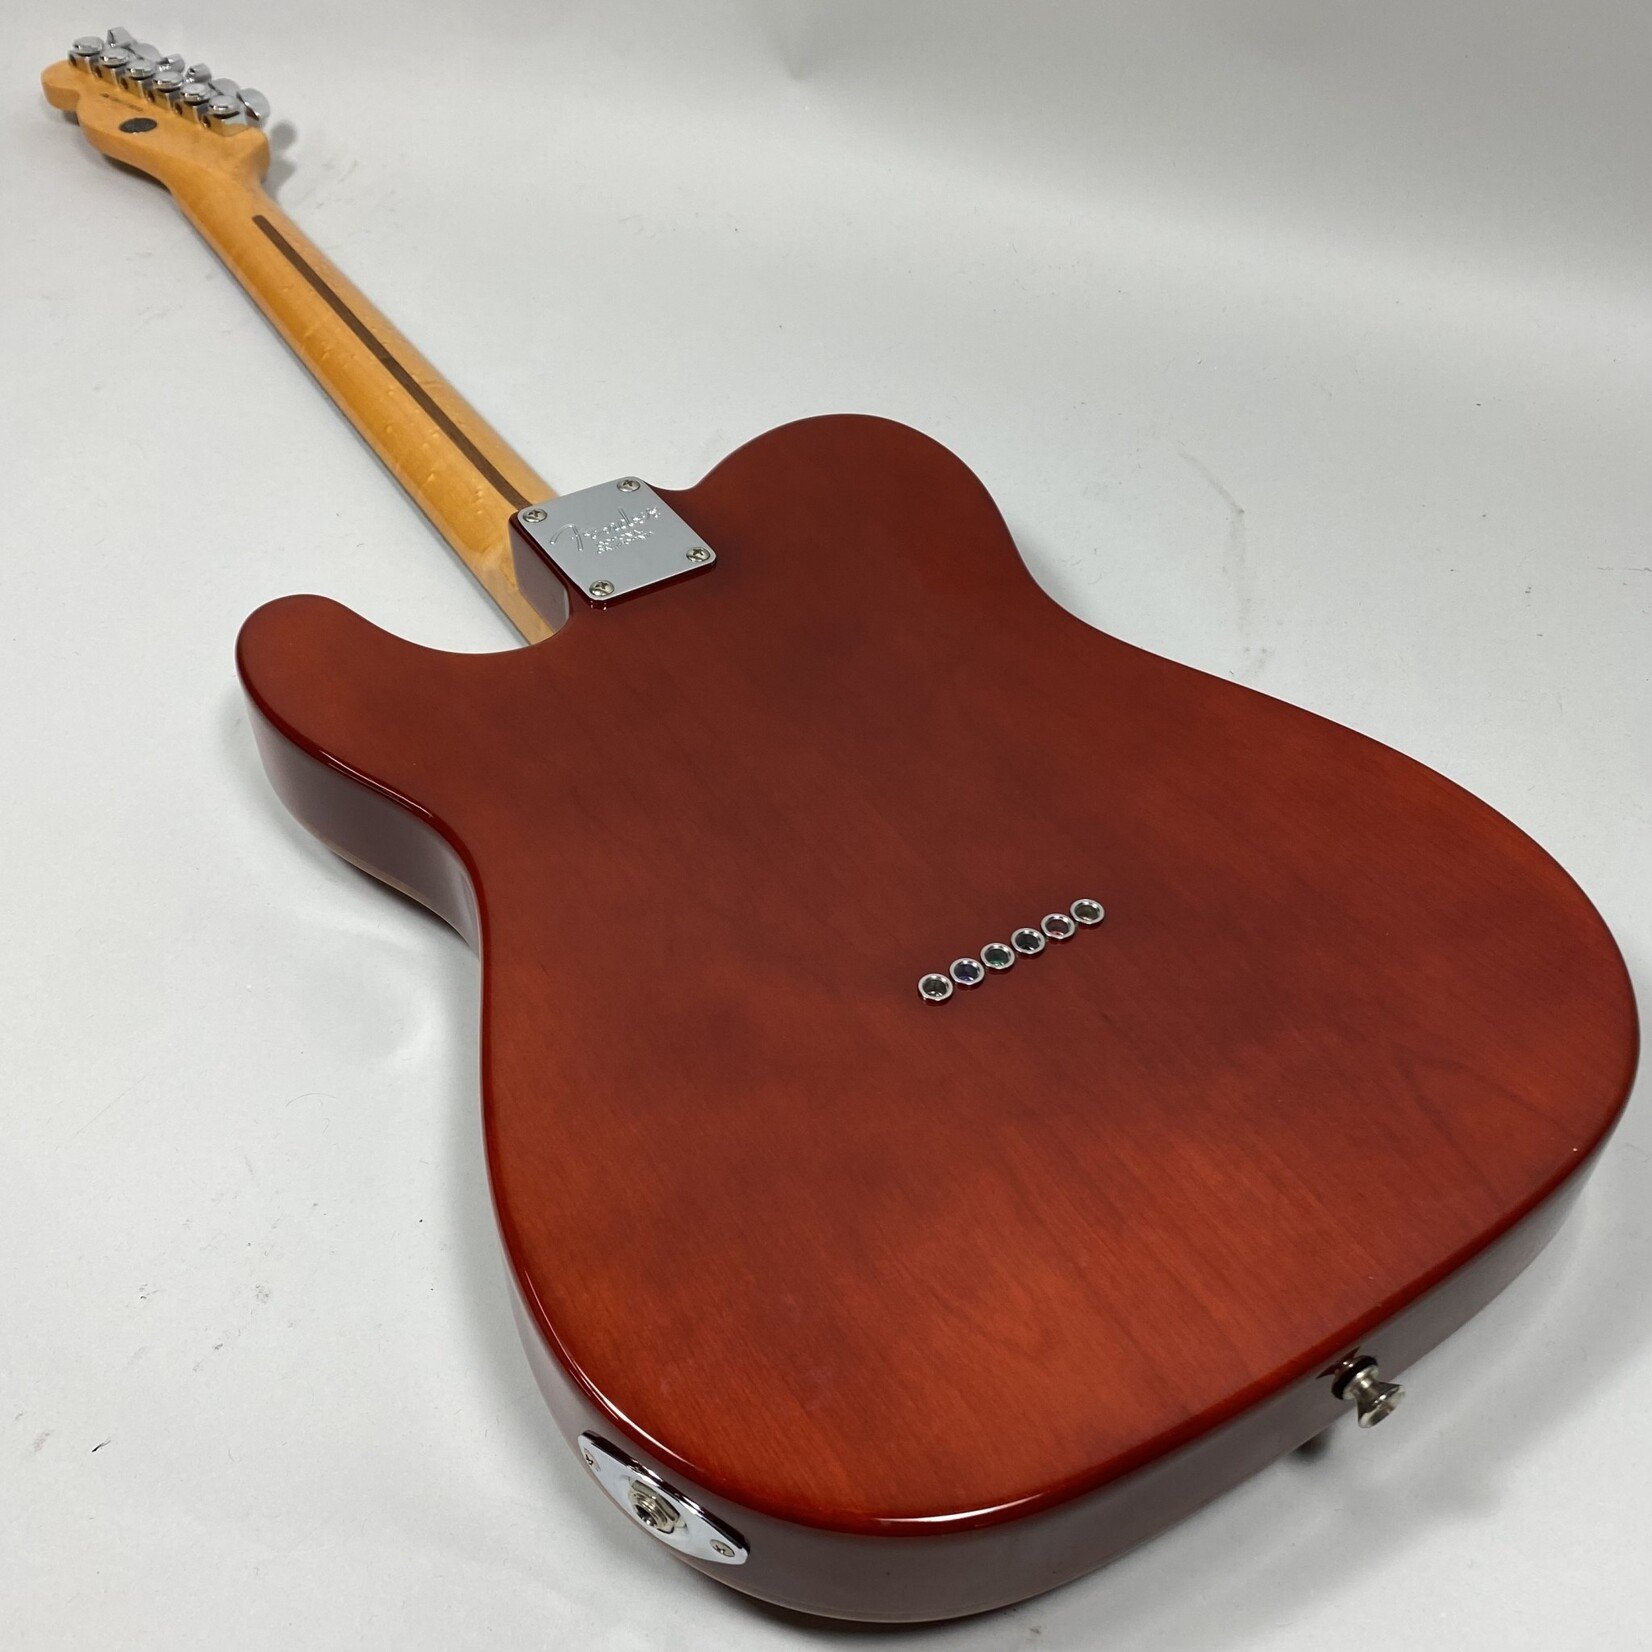 Fender 2012 Fender Select Telecaster Koa Burst Carved Top